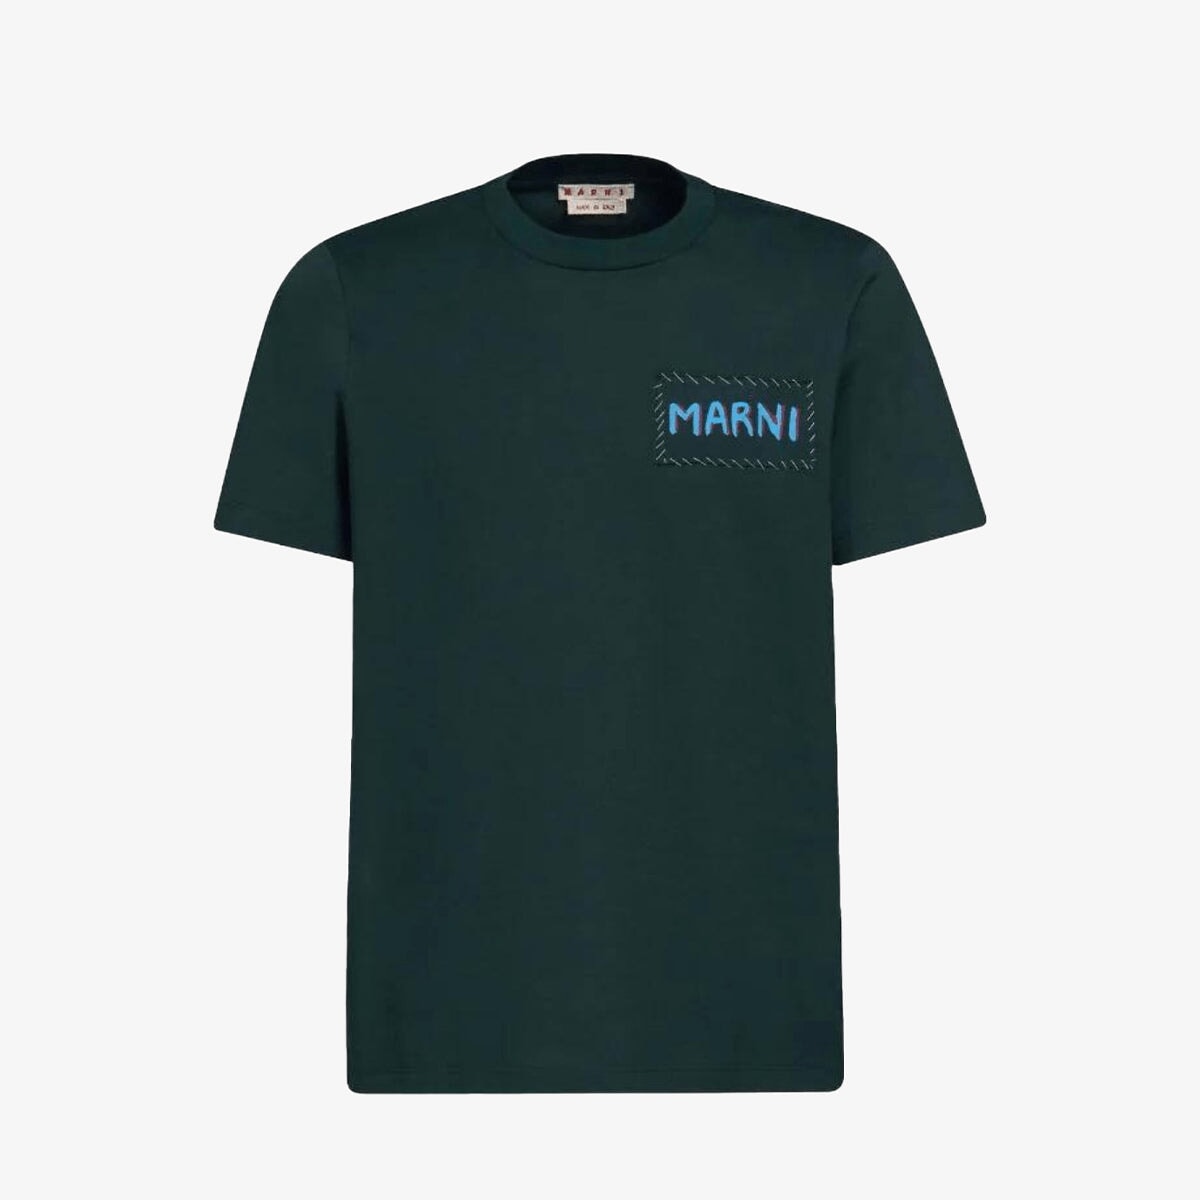 Marni “Spherical Green” T-shirt T-Shirts Marni